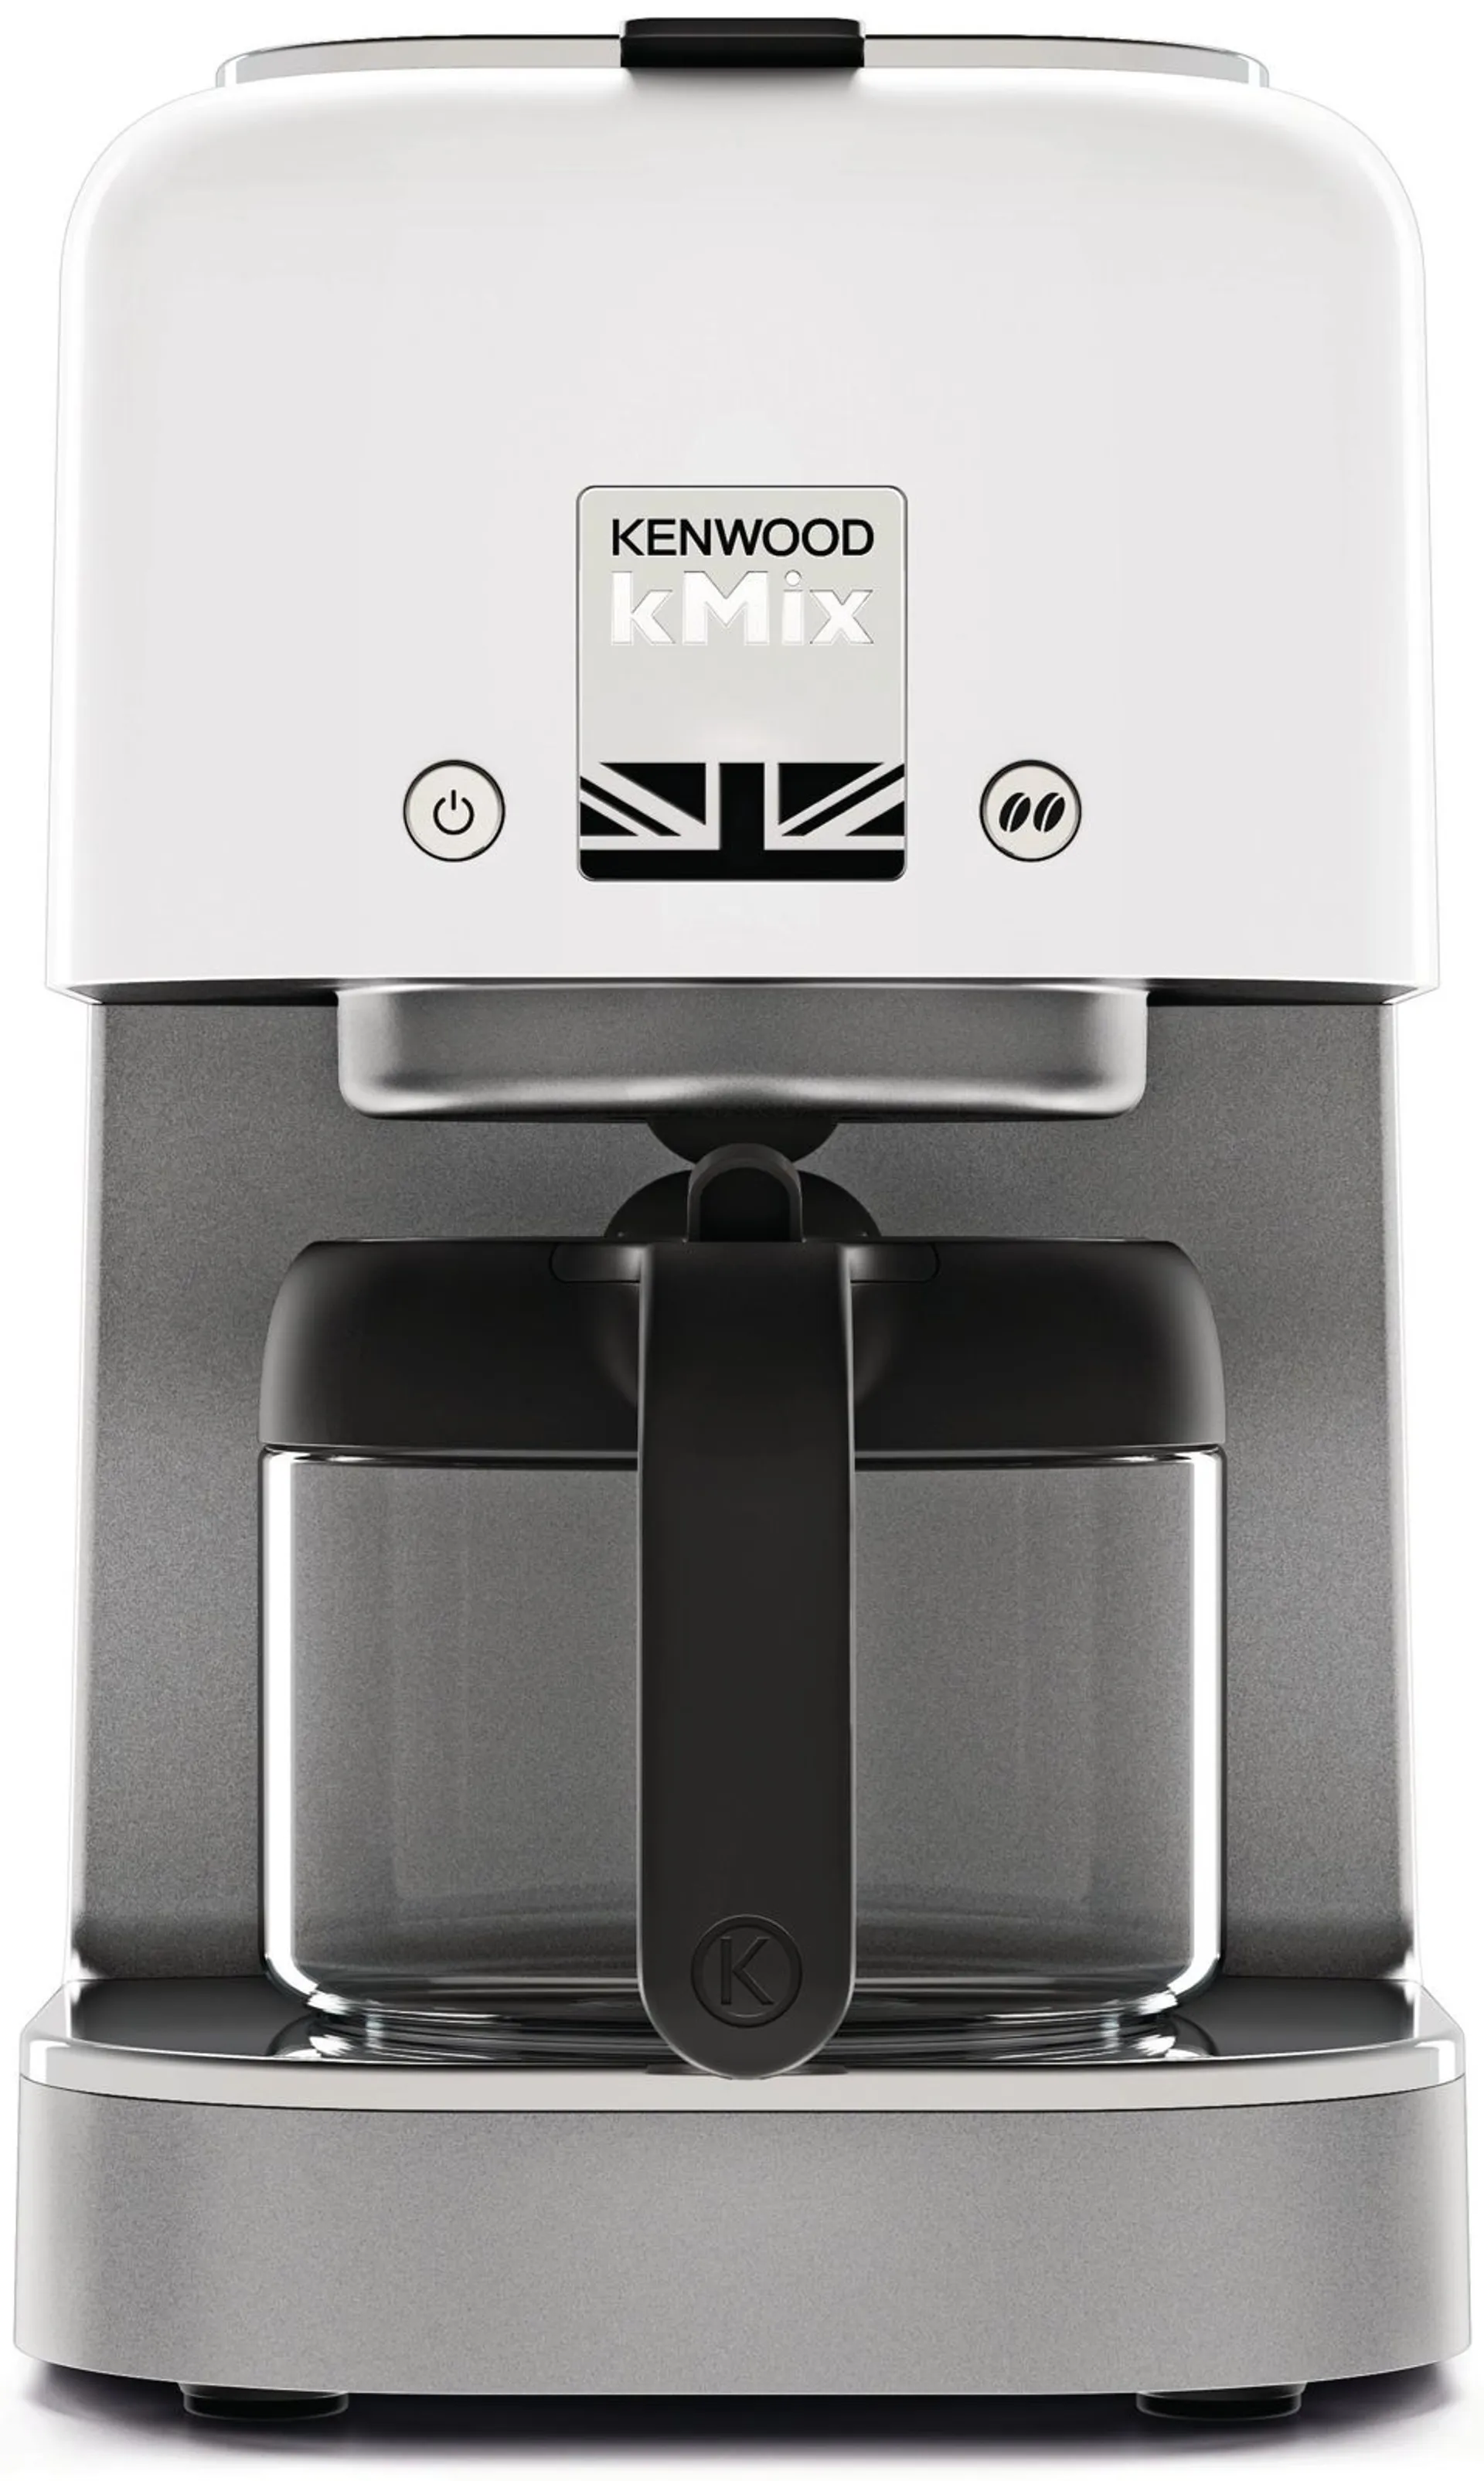 Kenwood COX750WH kMix kahvinkeitin valkoinen - 1